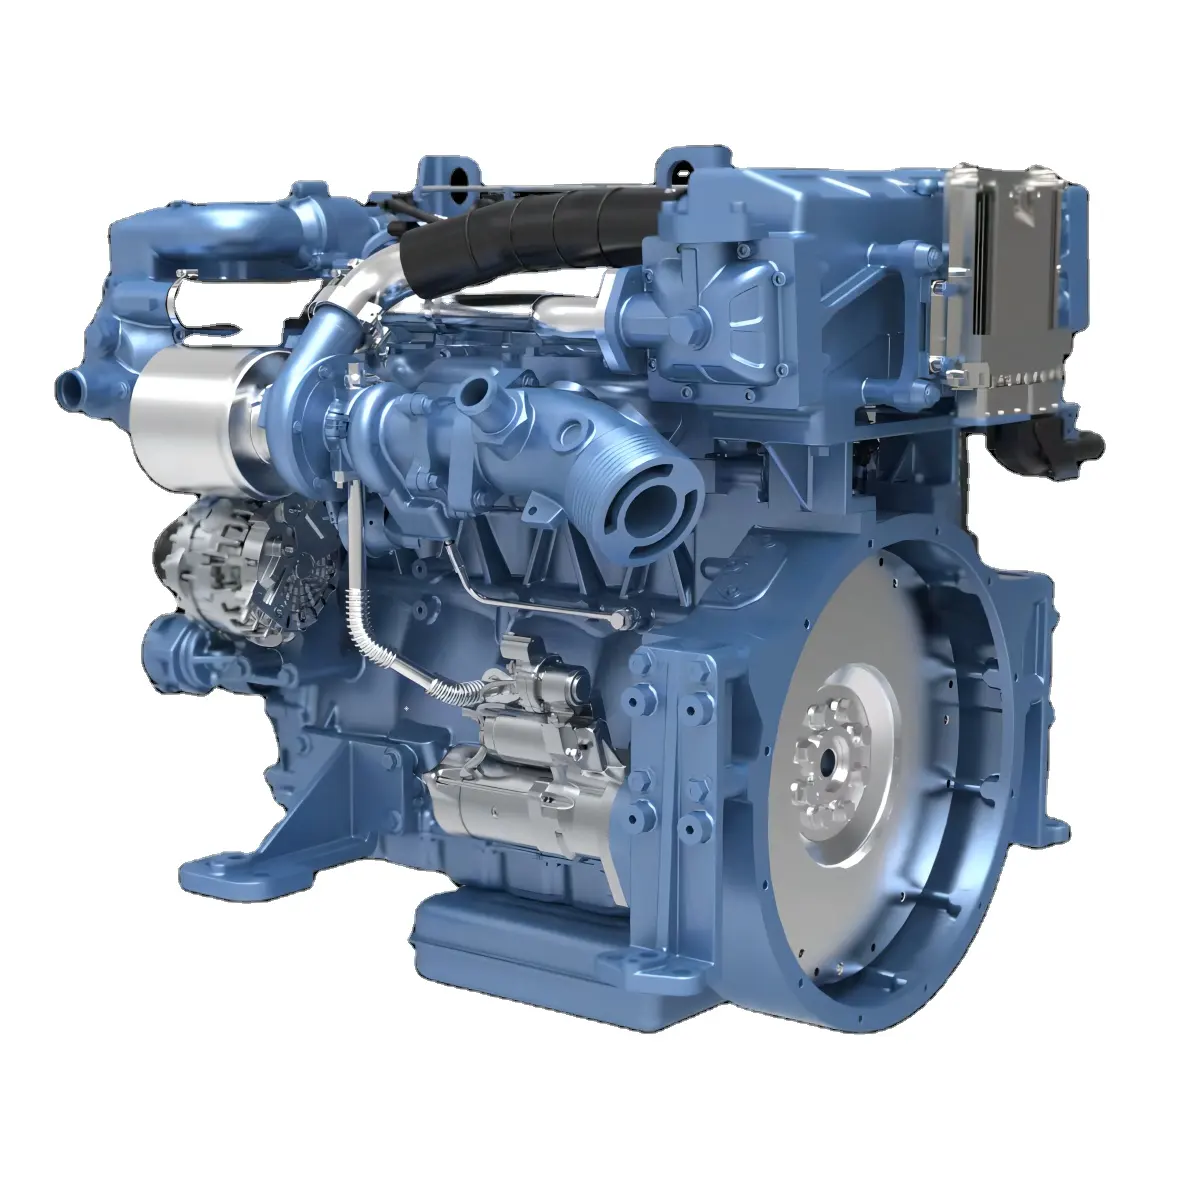 Конкурентоспособная цена weichai Судовой двигатель ручное WP3N Число оборотов холостого хода 3000 об/мин Номинальная мощность 118kW для судостроения и ремонта